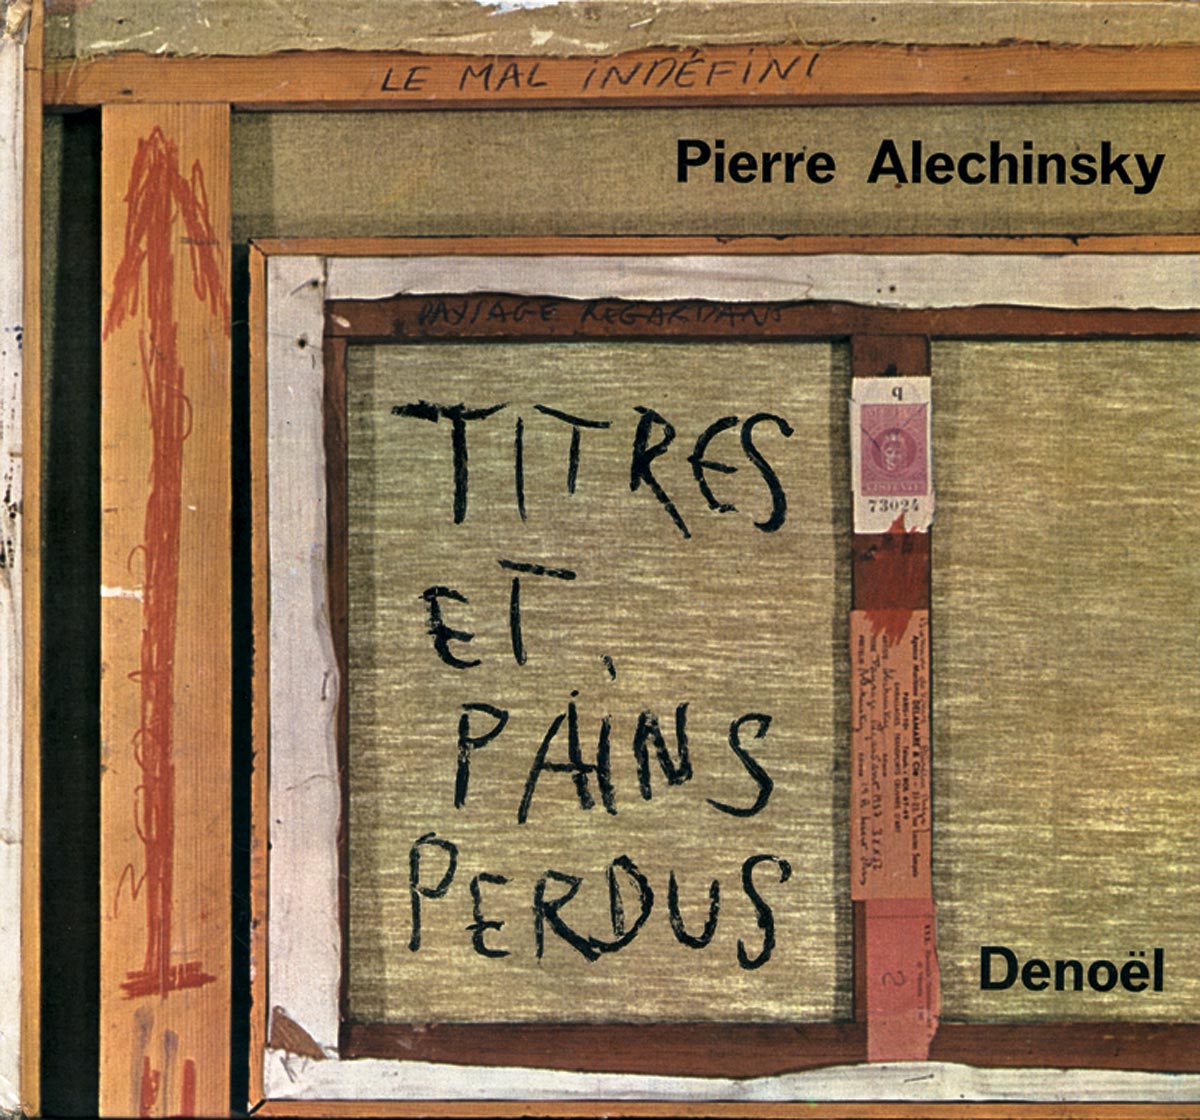 Pierre-Alechinsky-Livre-choisir-Titres-et-pains-perdus-Denoel,-Paris-1965